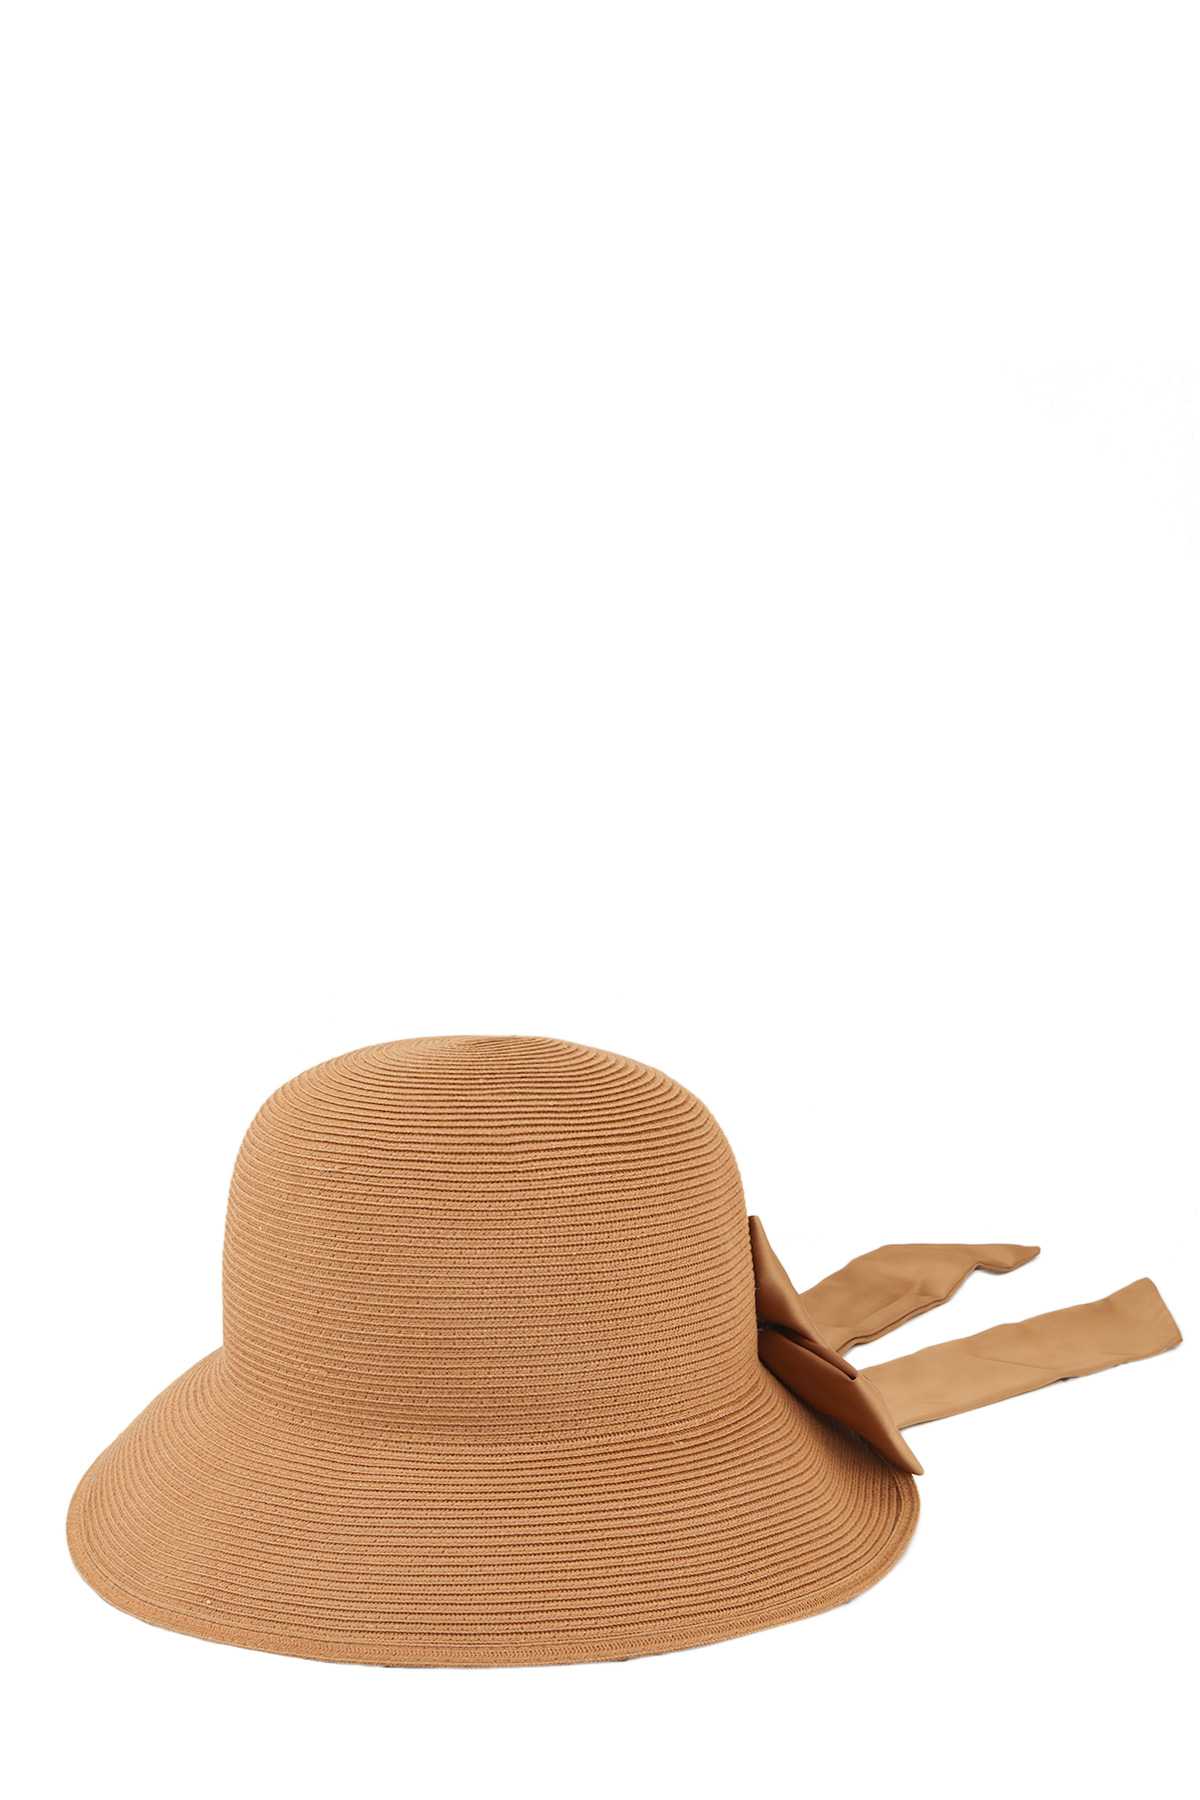 Big Size Straw Back Ribbon Panama Sun Hat